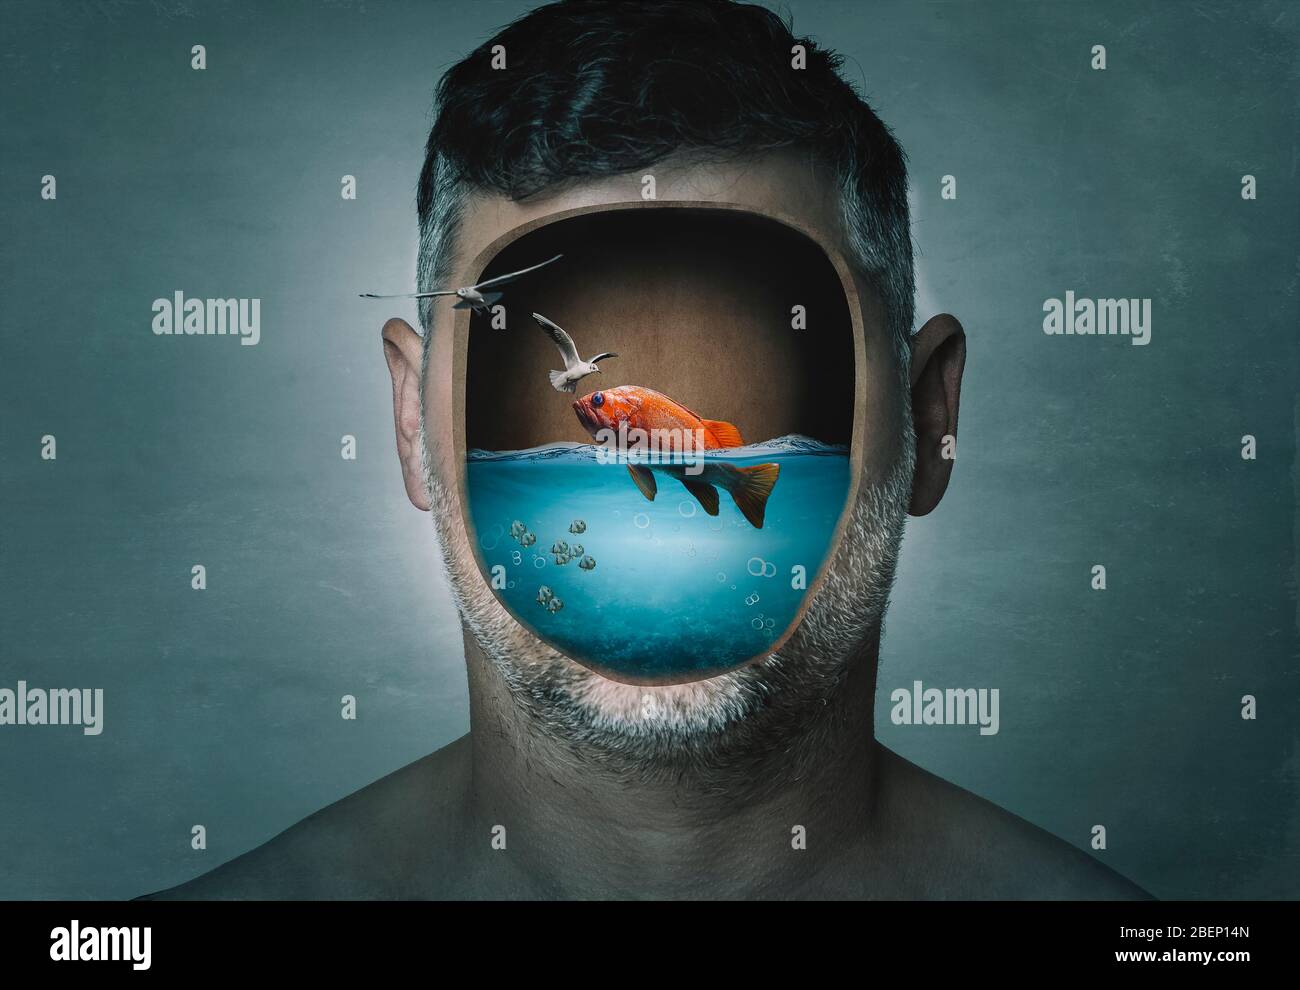 Surreales Porträt des Menschen mit zugeschnittenem Gesicht mit Wasser  gefüllt mit einem Fisch innen auf einem blauen Hintergrund. Surreales Bild.  Surrealismus Stockfotografie - Alamy